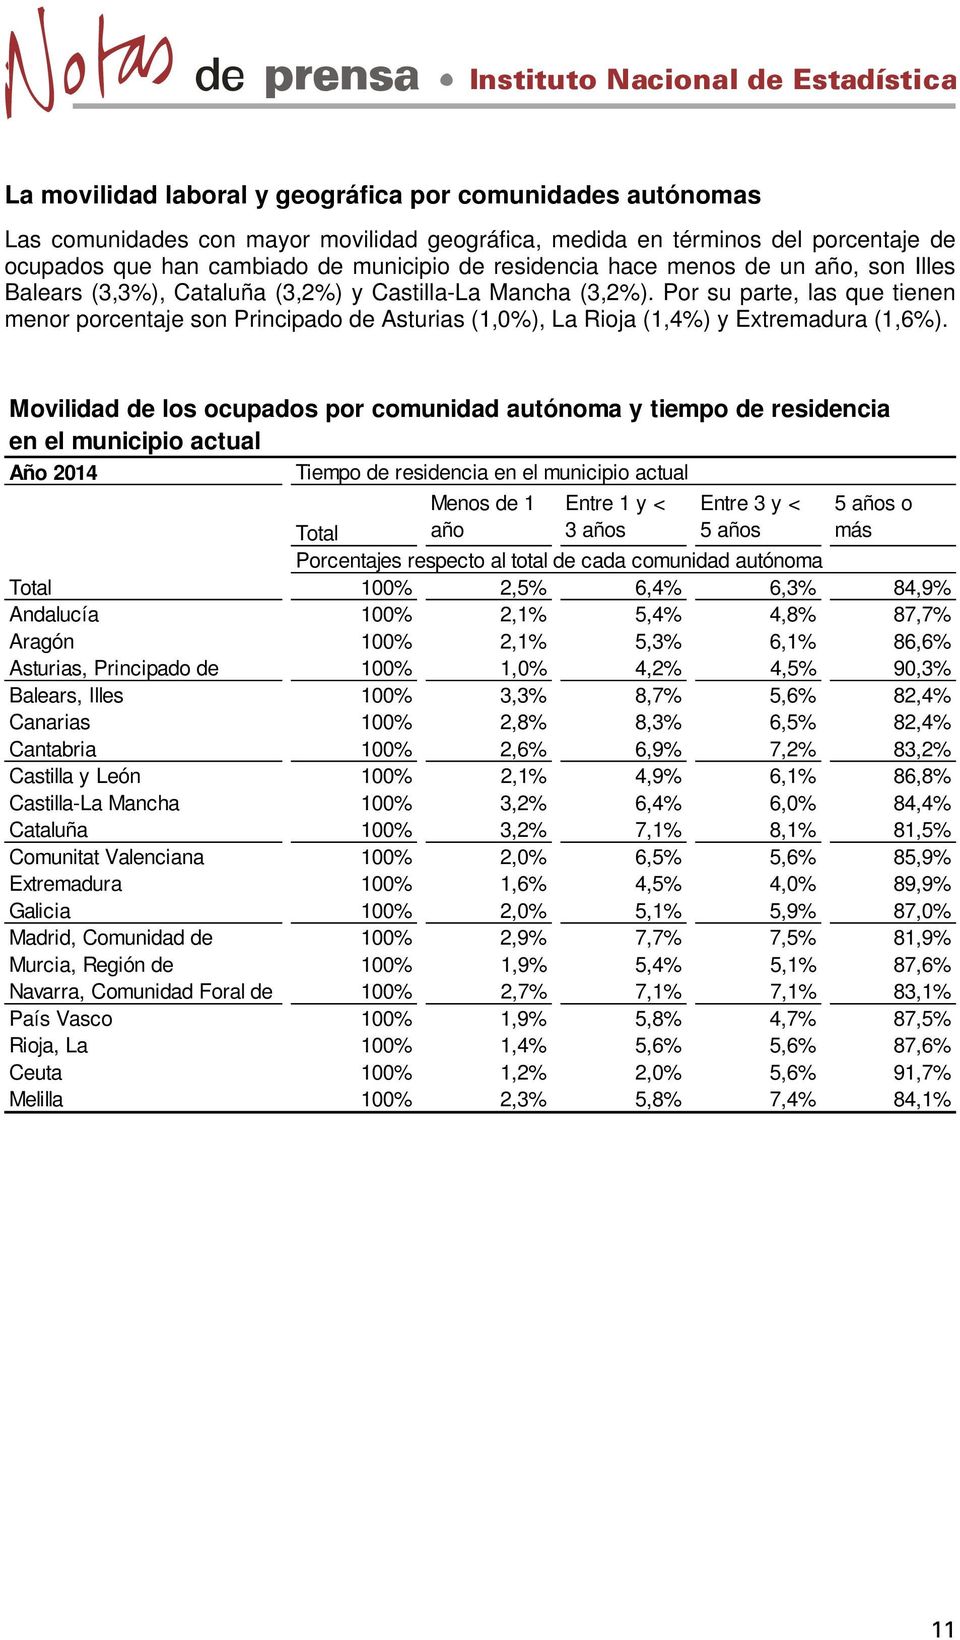 Por su parte, las que tienen menor porcentaje son Principado de Asturias (1,0%), La Rioja (1,4%) y Extremadura (1,6%).